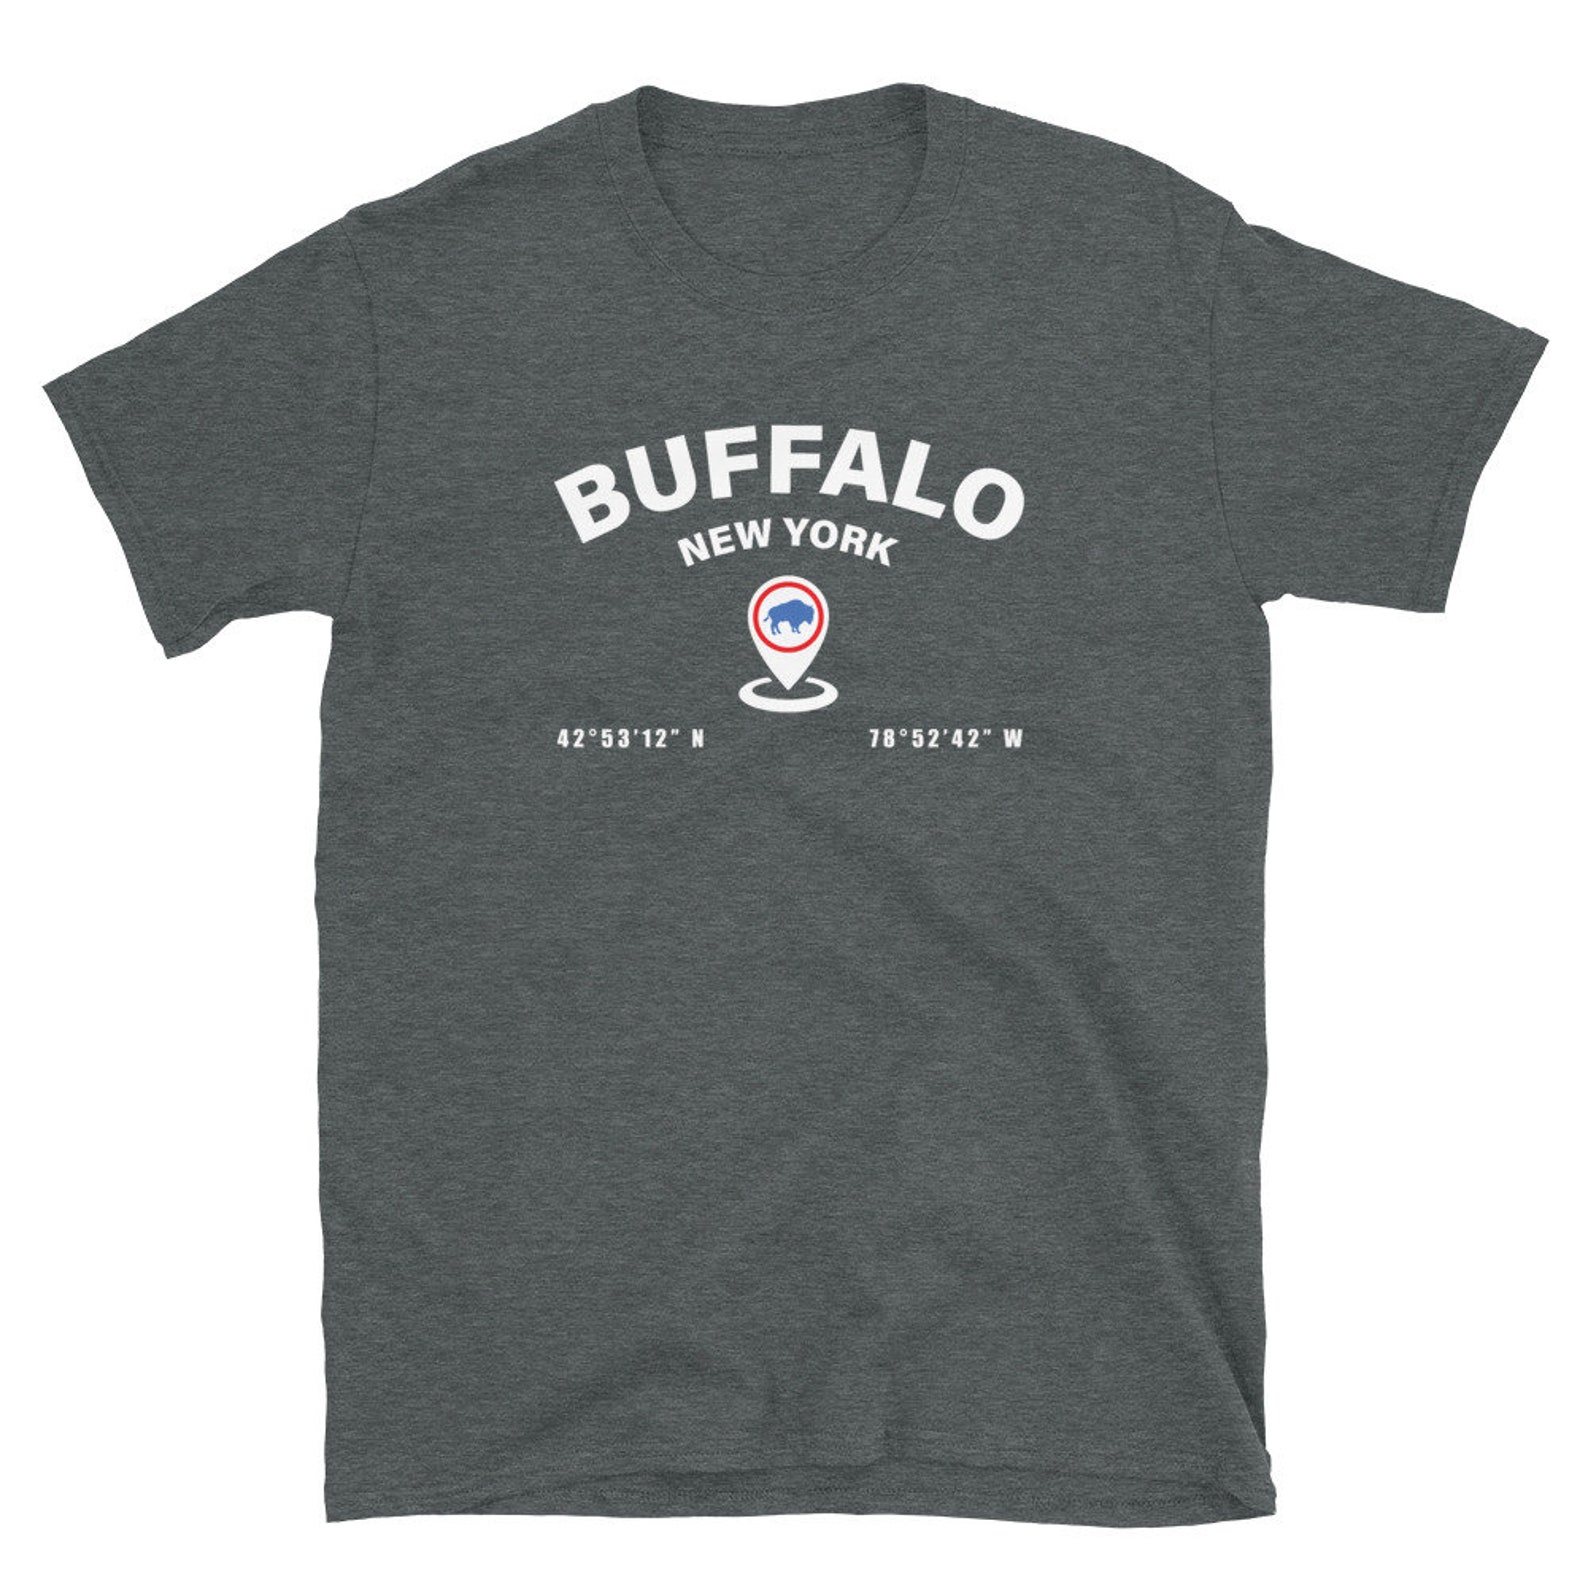 Buffalo T Shirts, Buffalo Shirts, Buffalo Clothing, Buffalo NY T Shirts ...